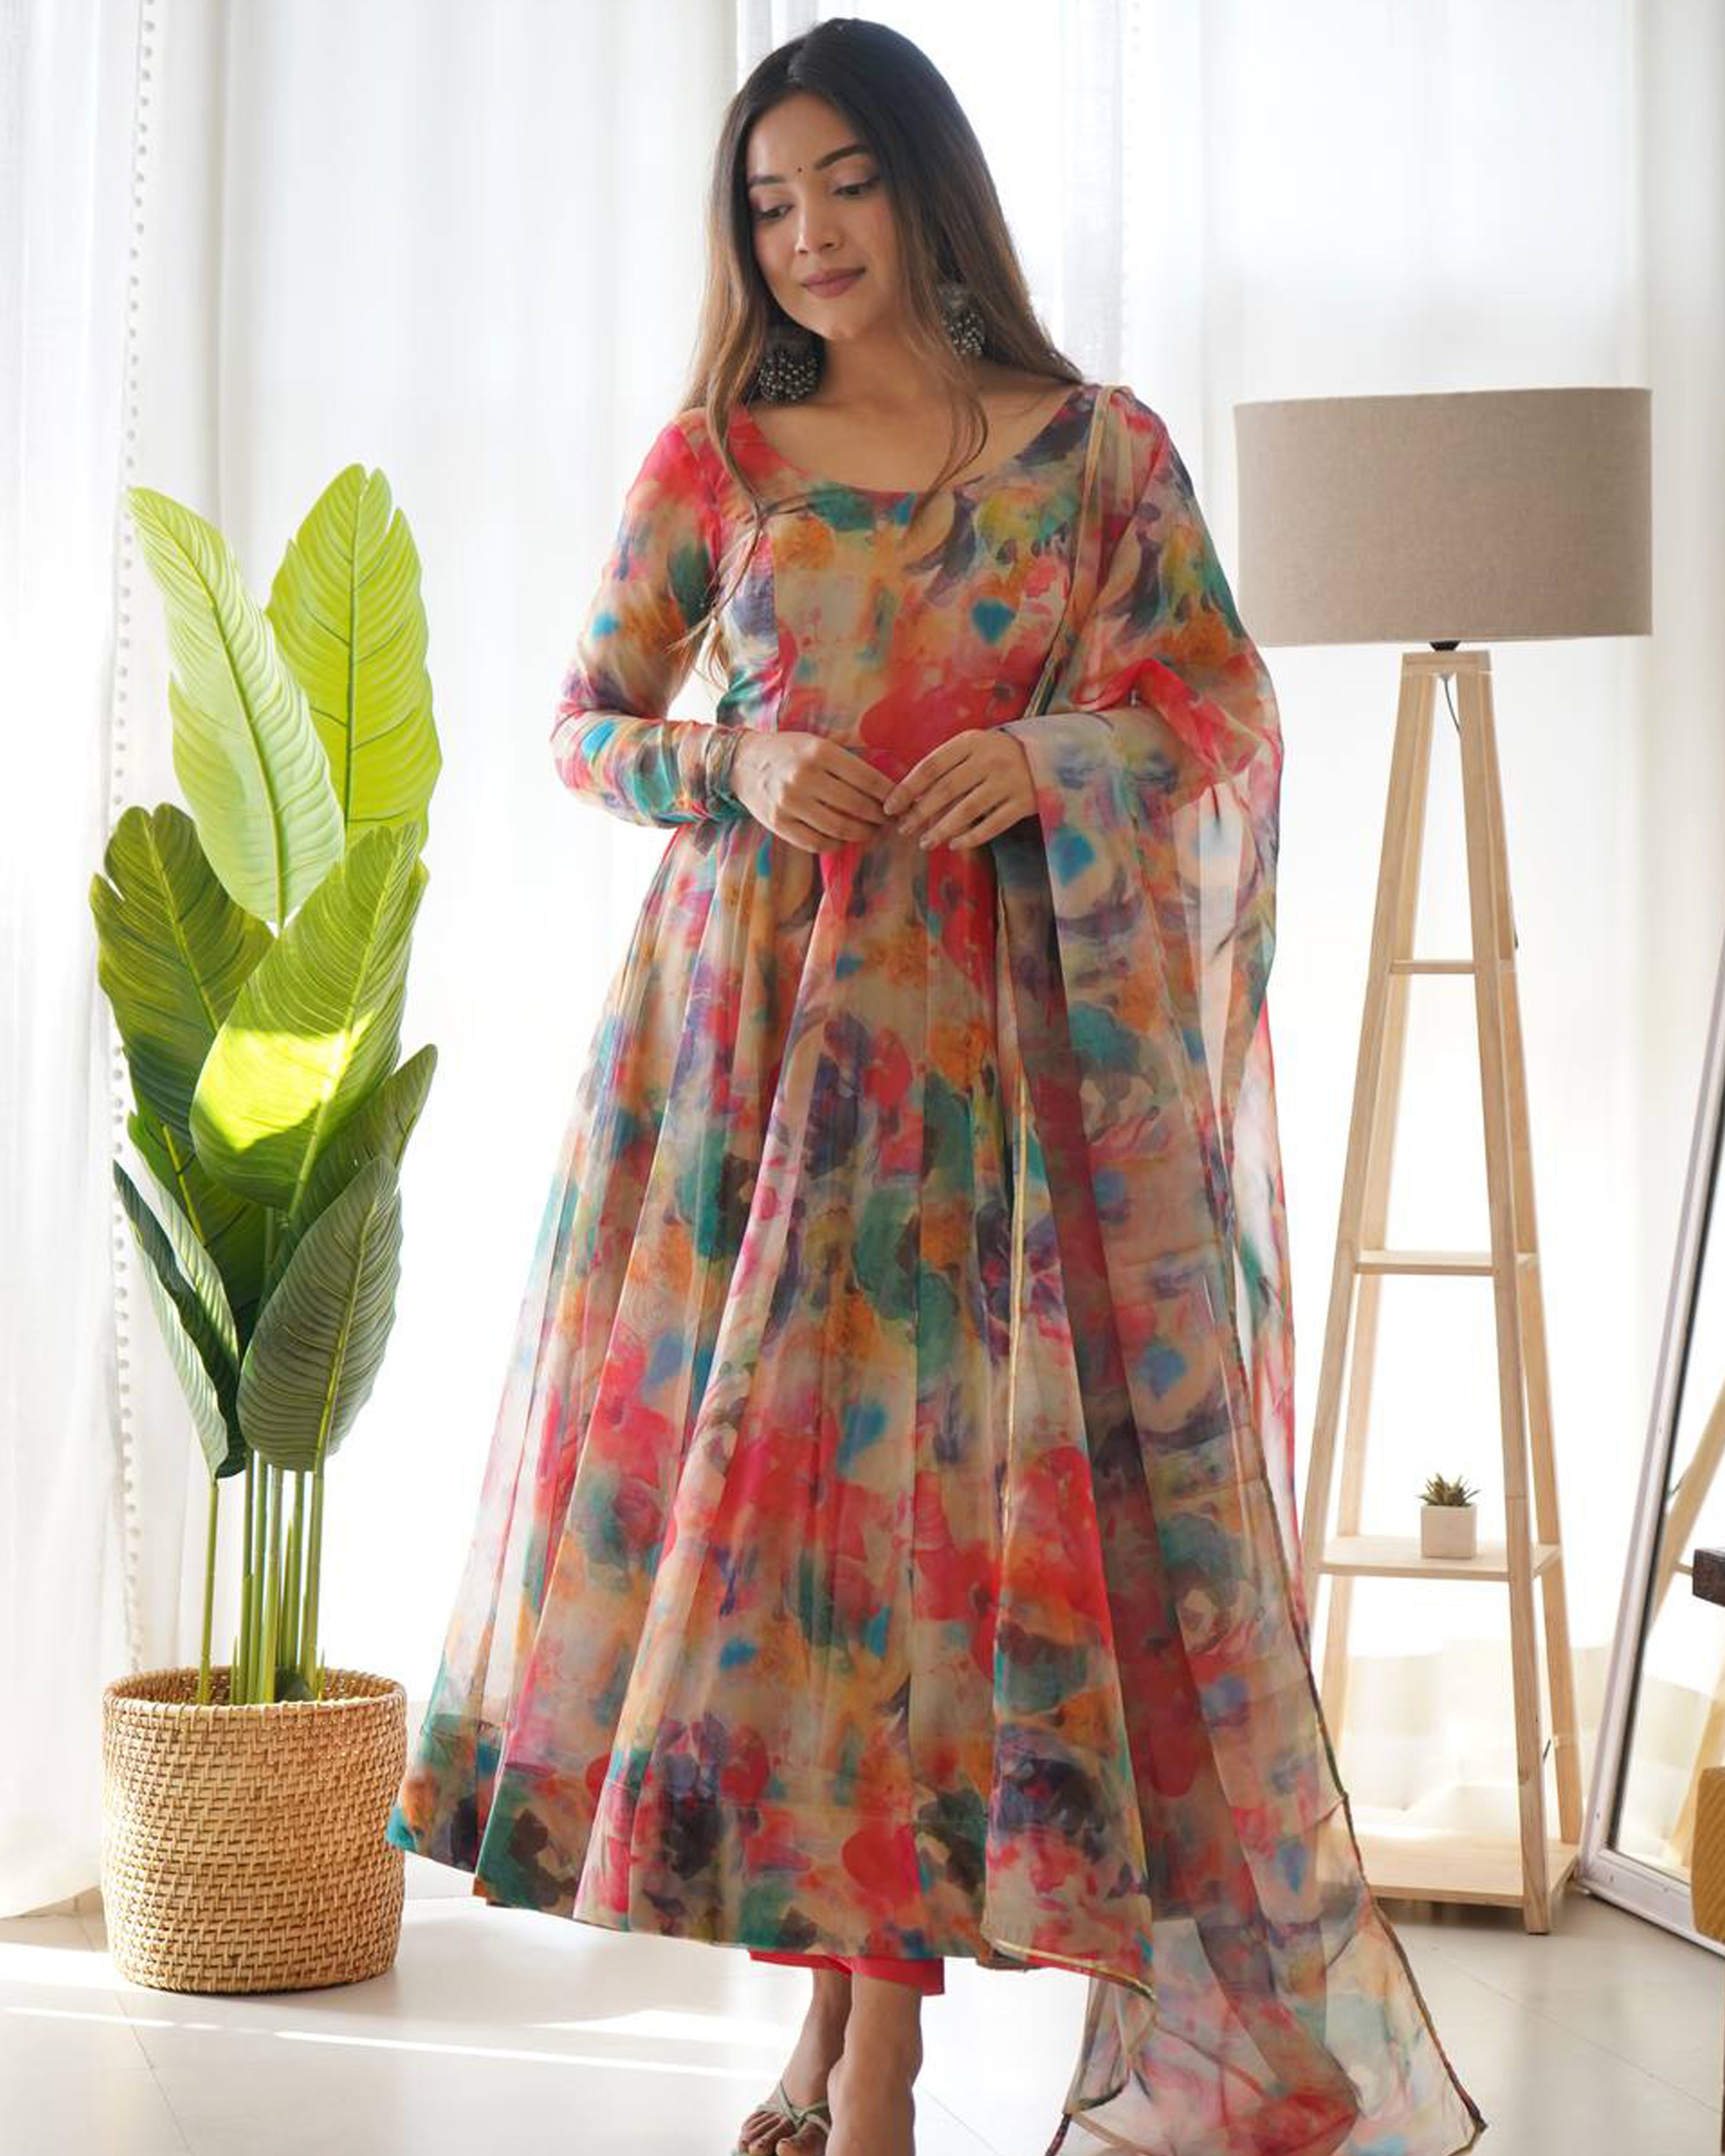 मल्टी कलर ड्रेस में नजर आईं पलक तिवारी, कैमरे के सामने दिखाया देसी स्वैग -  Palak Tiwari looks beautiful in multi colour frock suit | Jansatta